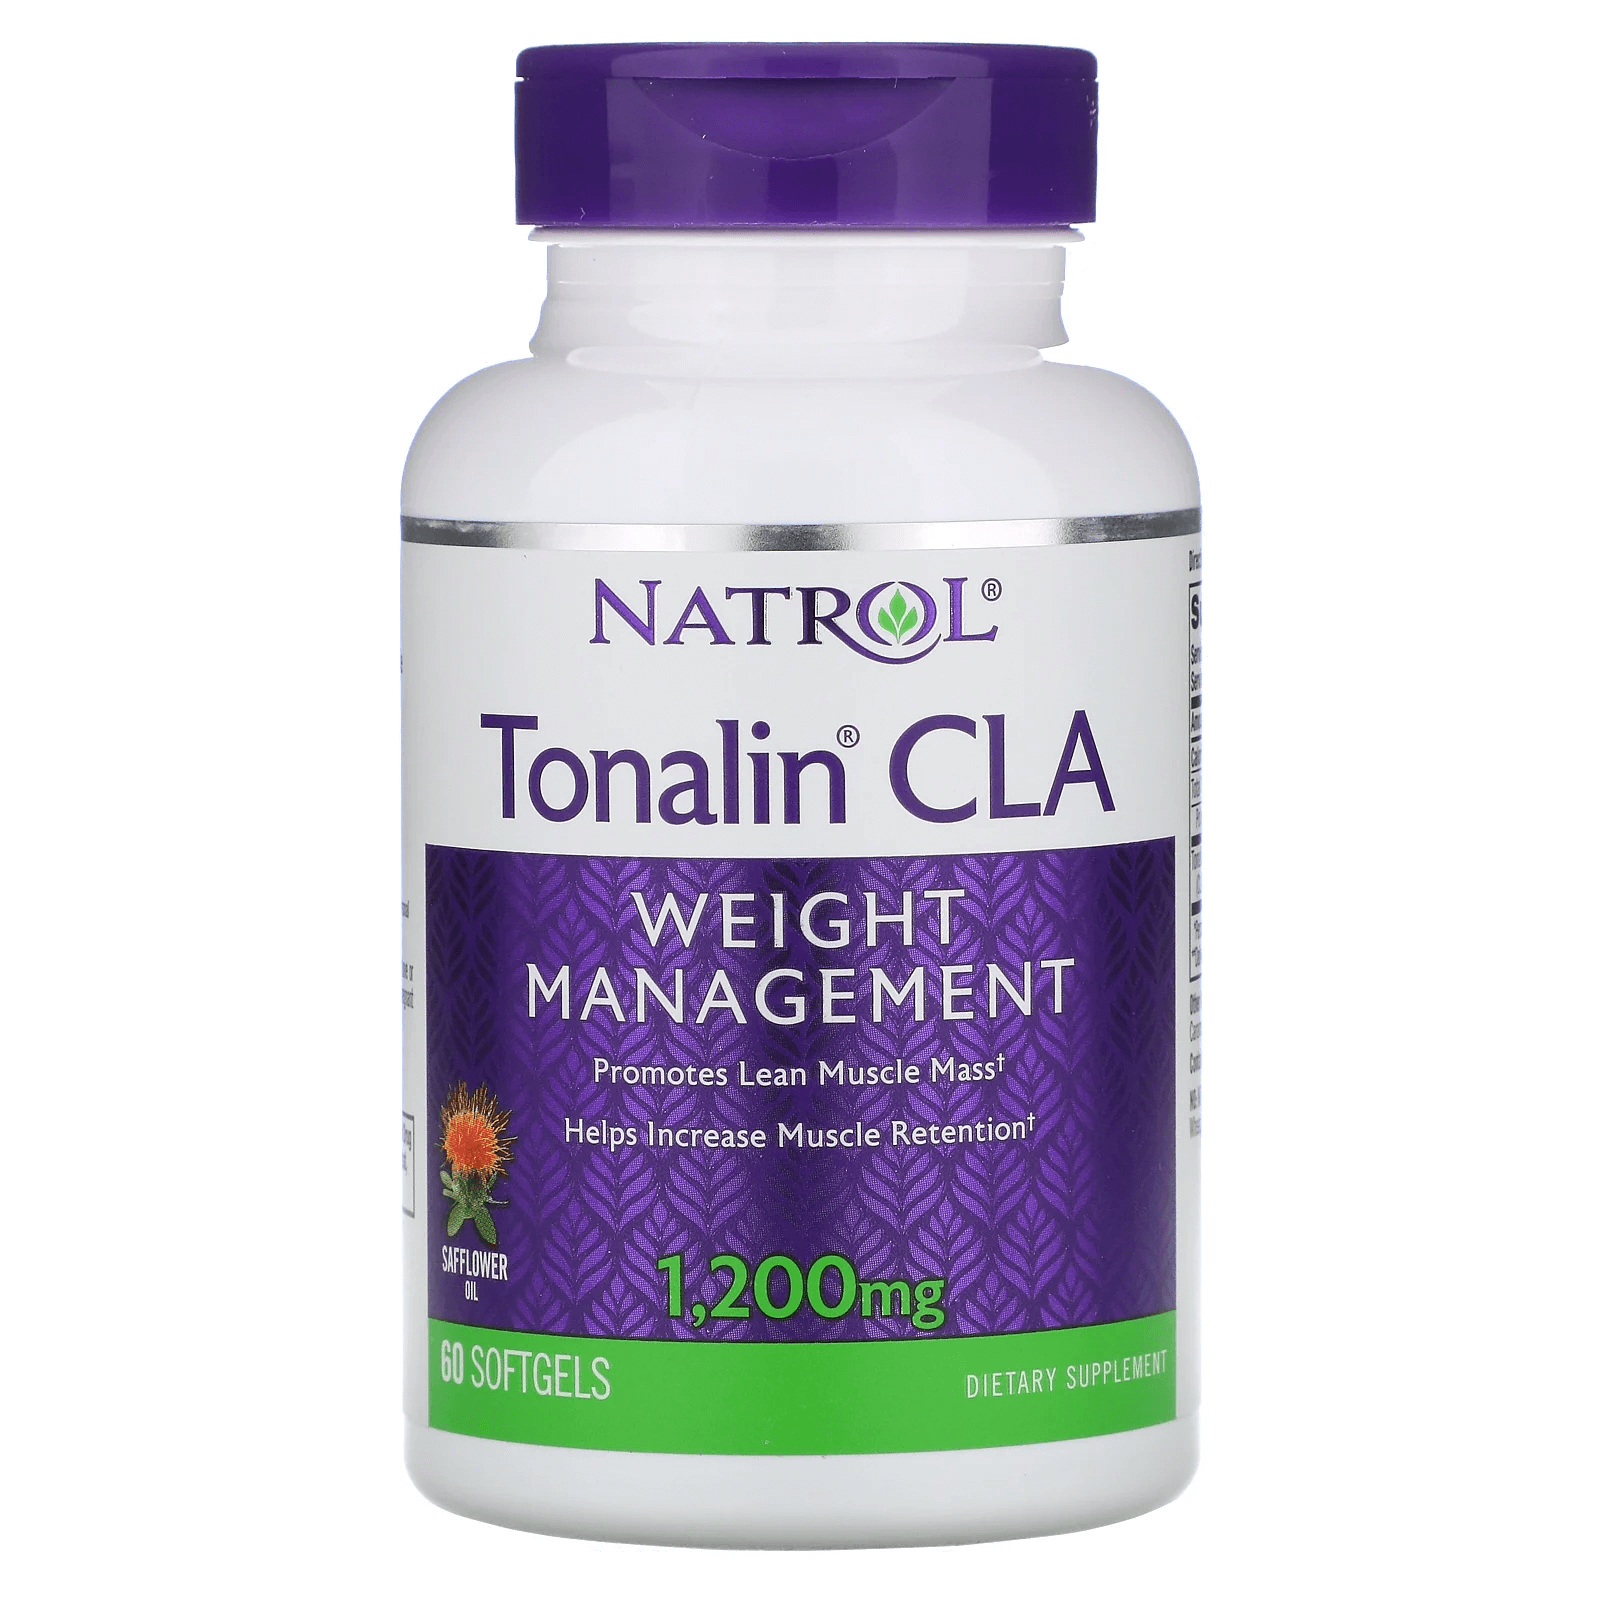 natrol tonalin конъюгированная линолевая кислота клк 1200 мг 90 мягких желатиновых капсул Tonalin CLA, конъюгированная линолевая кислота (КЛК), 1200 мг, 60 мягких таблеток, Natrol